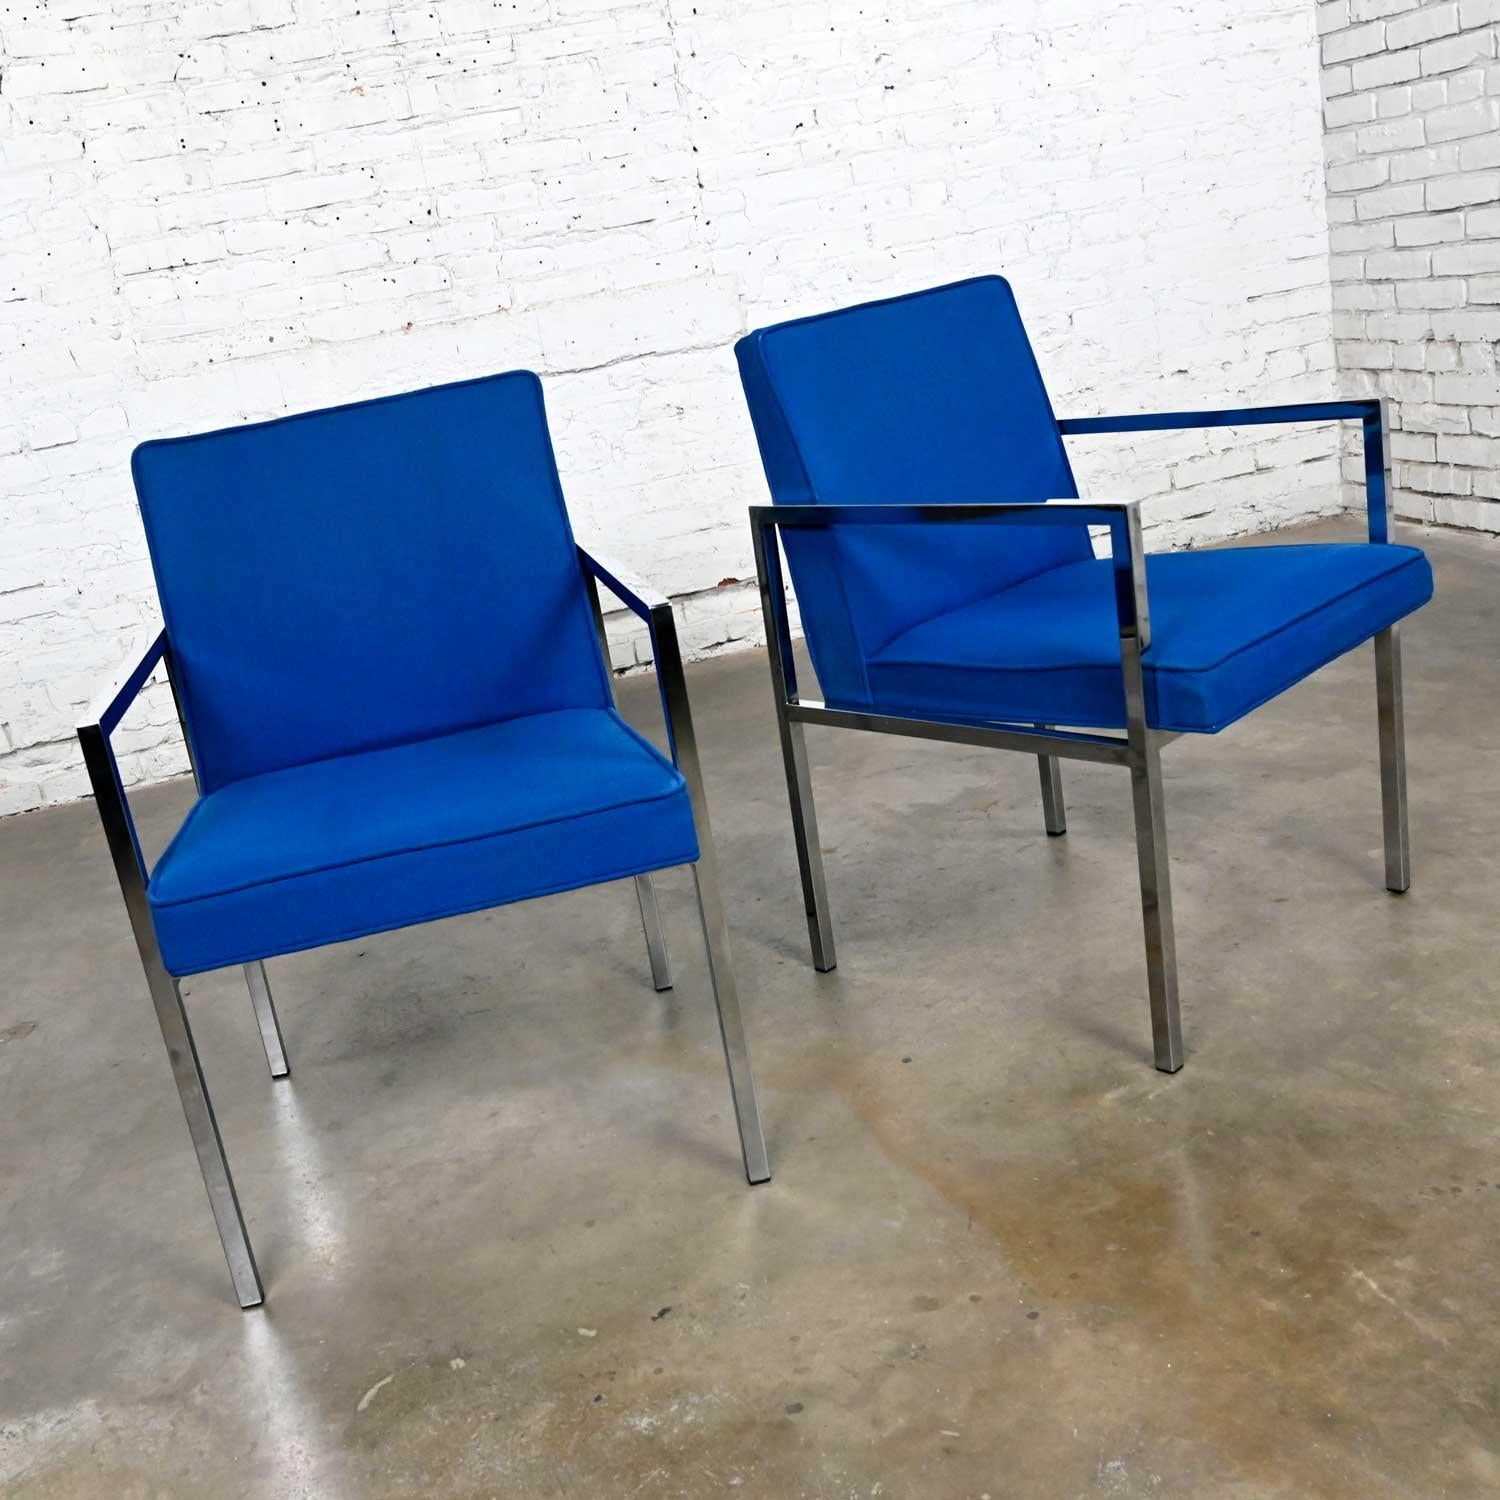 Superbe paire de fauteuils vintage bleu royal et chrome de la marque Hibriten Chair Company. Belle condition, en gardant à l'esprit qu'il s'agit d'un produit vintage et non pas neuf, donc il y aura des signes d'utilisation et d'usure. Le chrome n'a